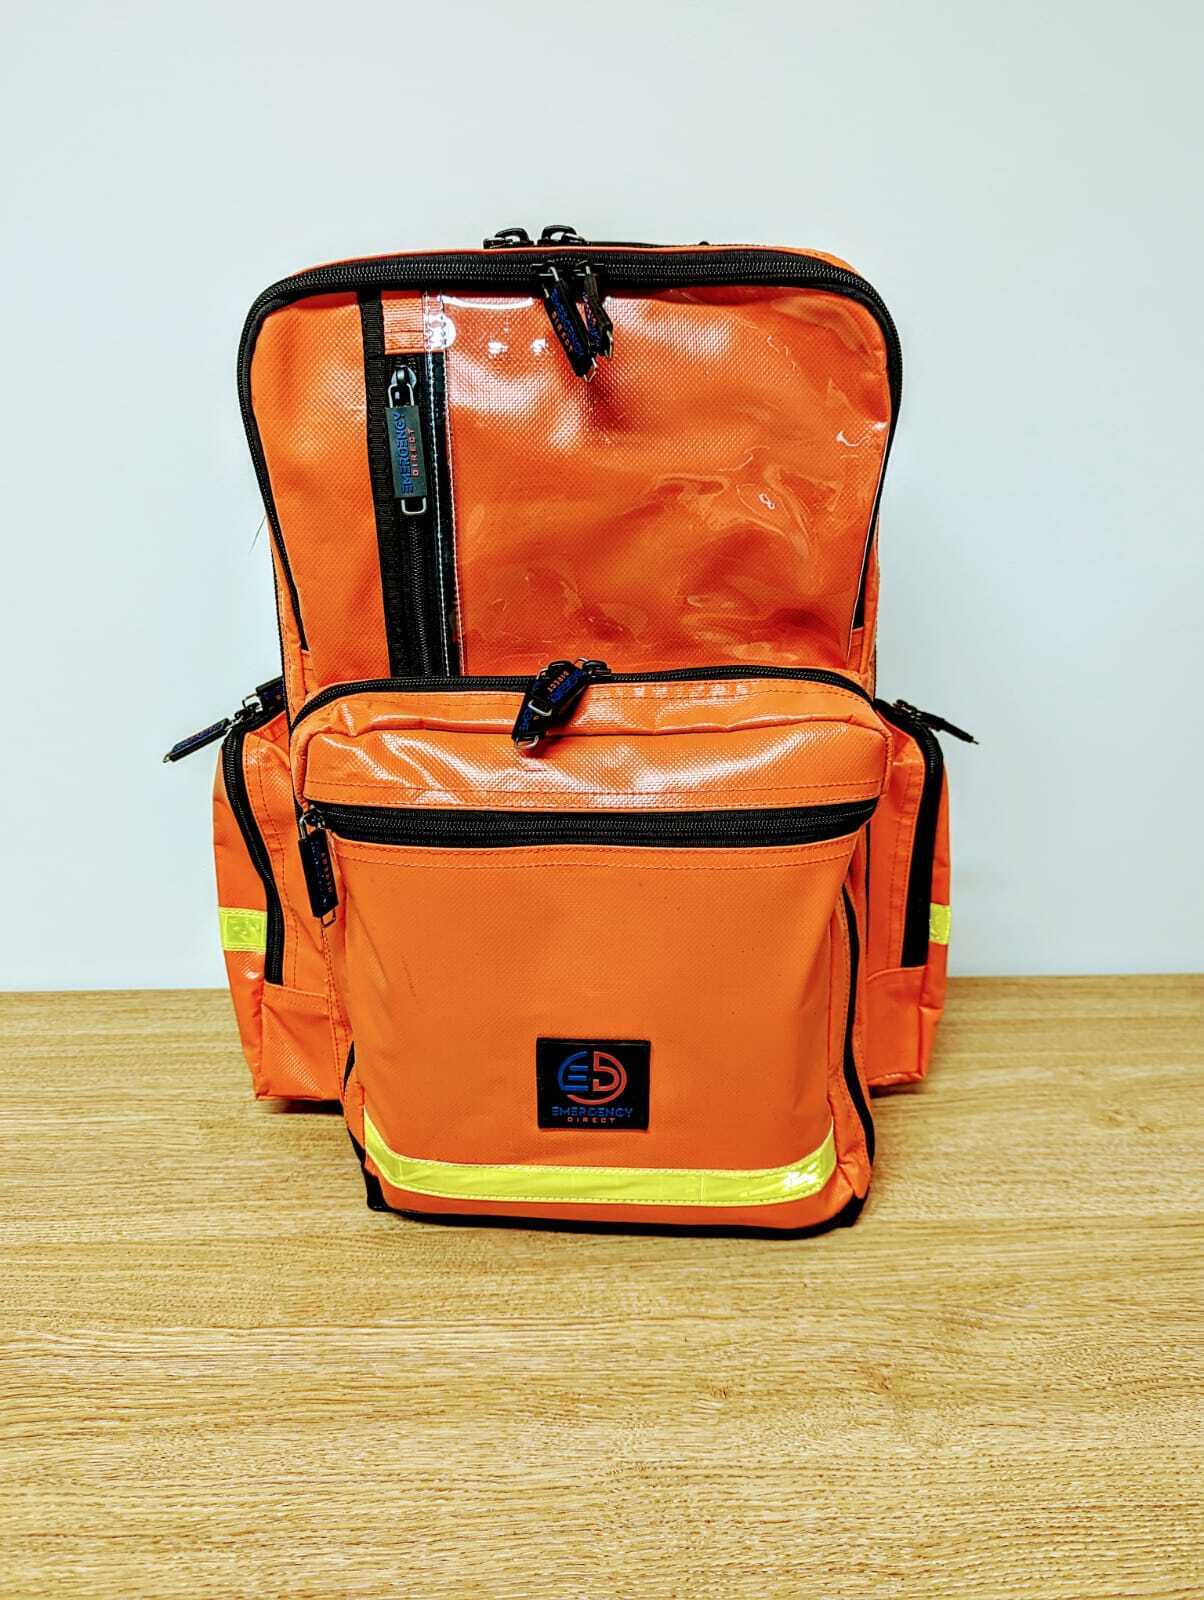 Medical Large Taska Response Backpack Responder Paramedic Ambulance First Aid